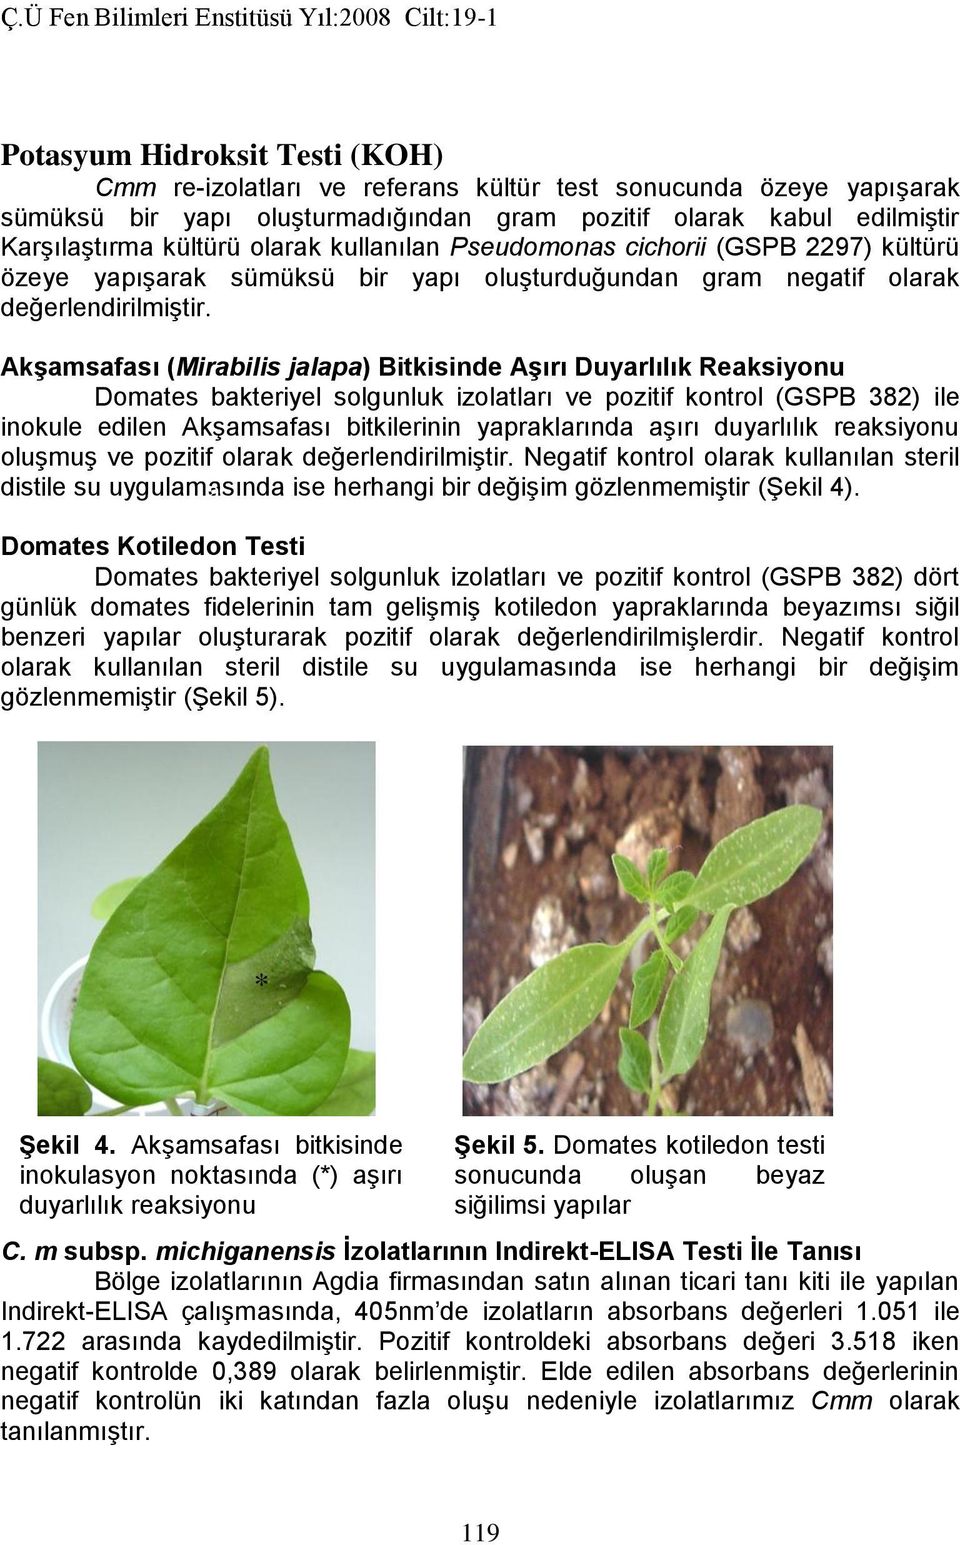 Akşamsafası (Mirabilis jalapa) Bitkisinde Aşırı Duyarlılık Reaksiyonu Domates bakteriyel solgunluk izolatları ve pozitif kontrol (GSPB 382) ile inokule edilen Akşamsafası bitkilerinin yapraklarında